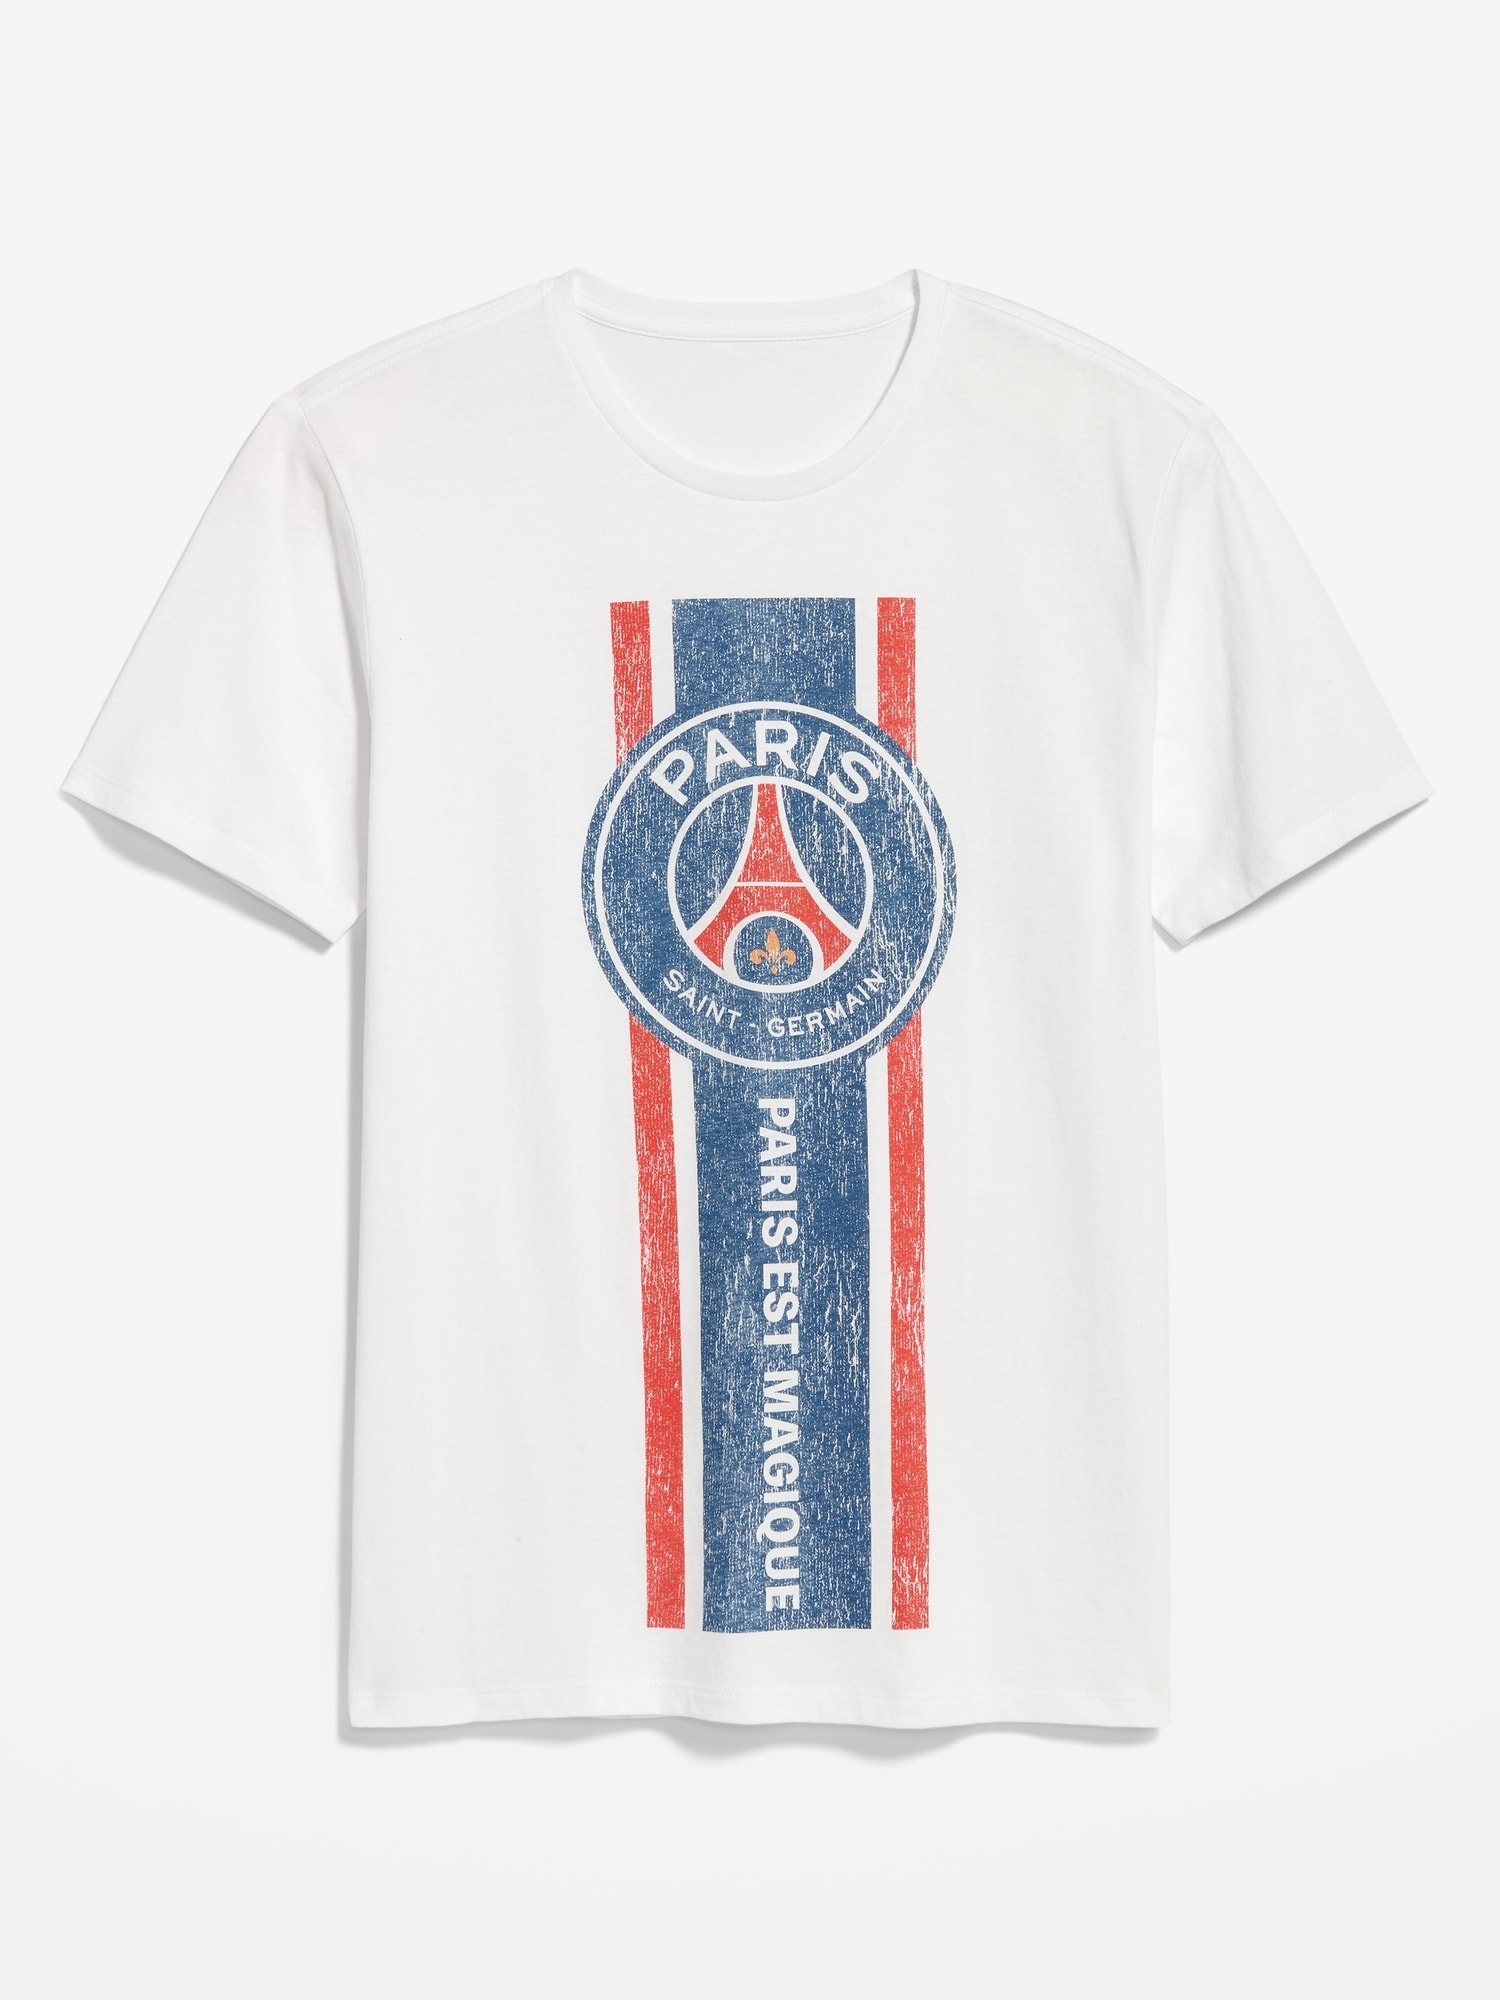 Paris Saint-Germain T-Shirt